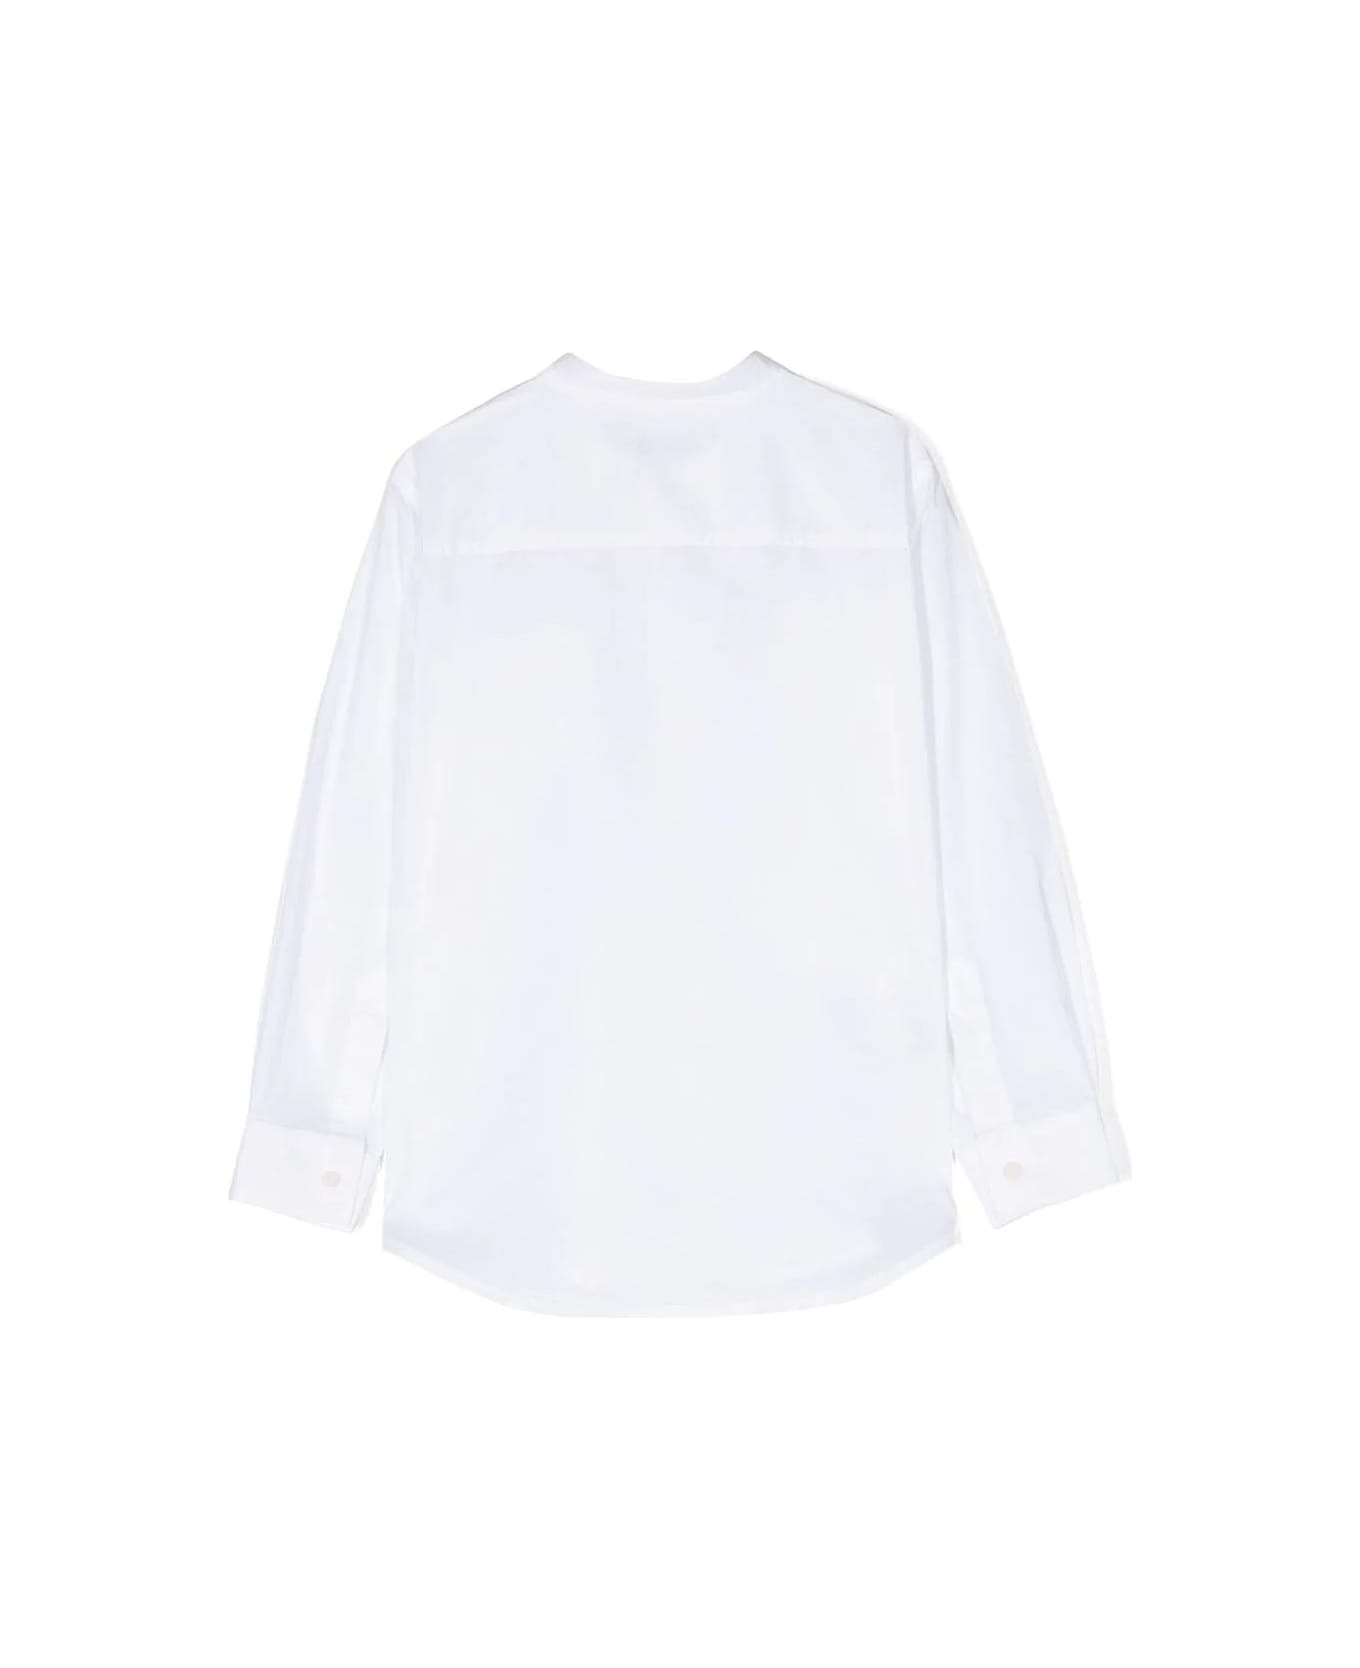 Il Gufo White Cotton Shirt - White シャツ